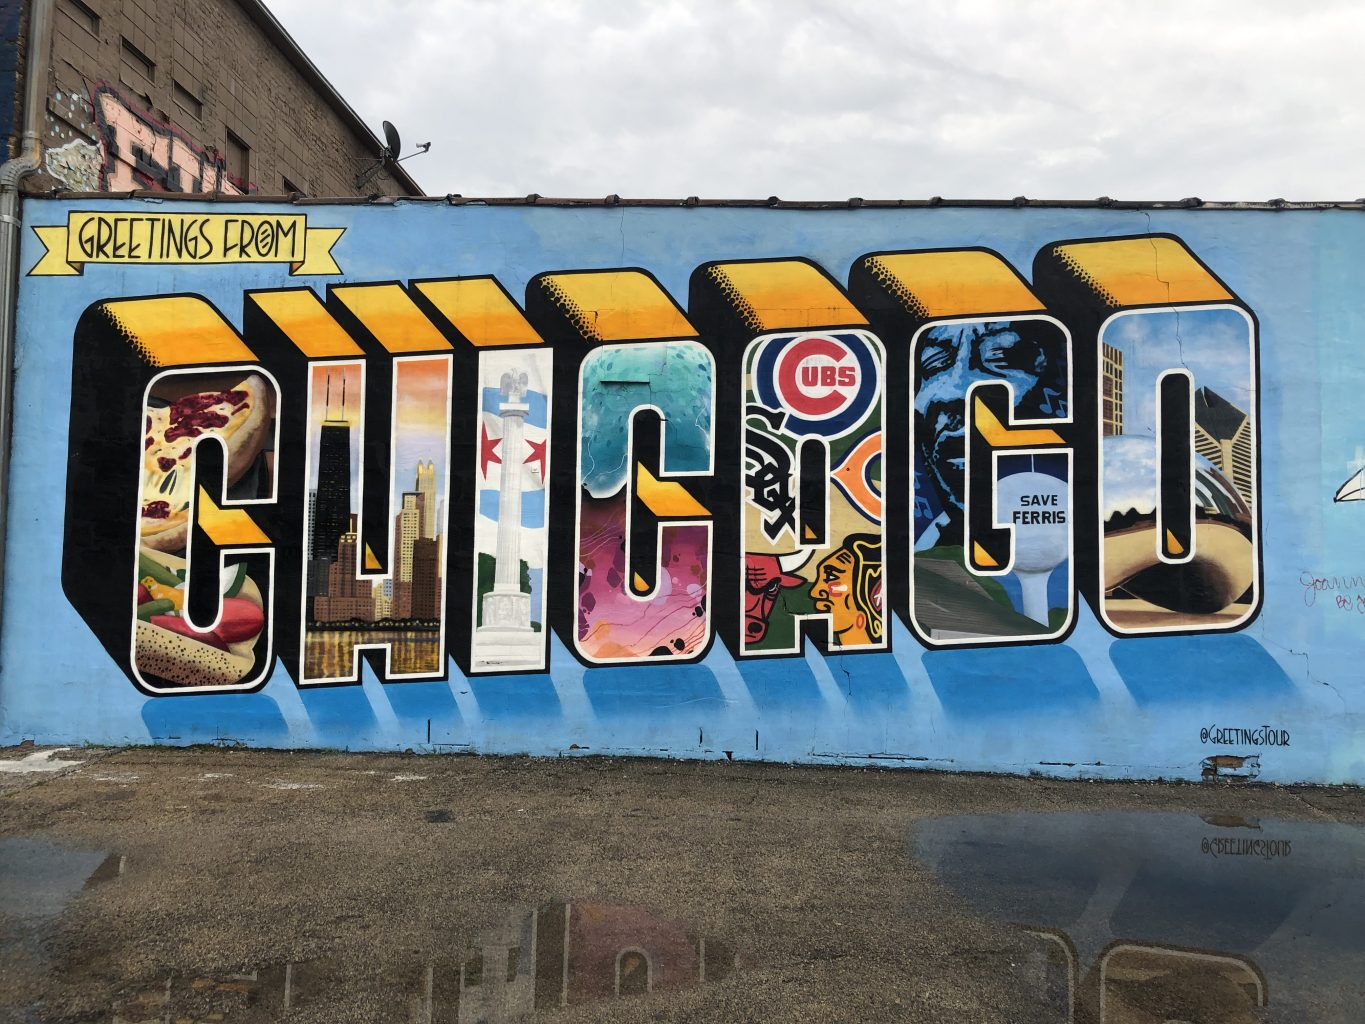 Greetings from Chicago. qué ver y hacer en Chicago